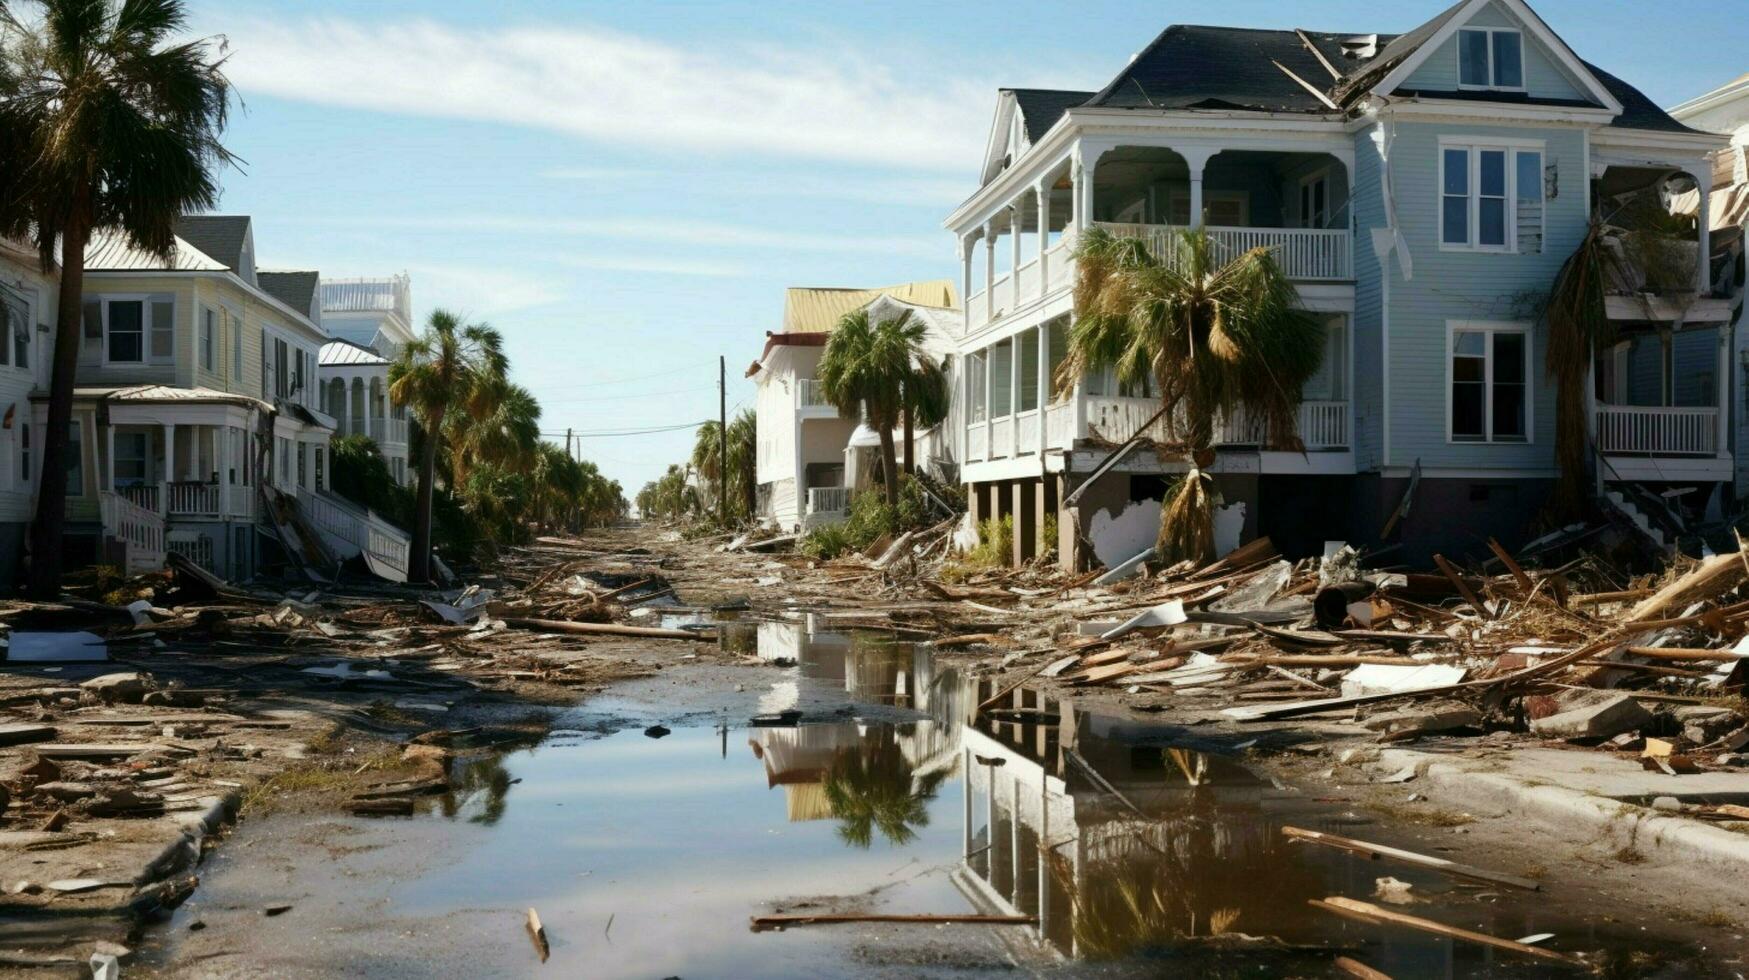 horrível devastação depois de furacão em casas e p foto